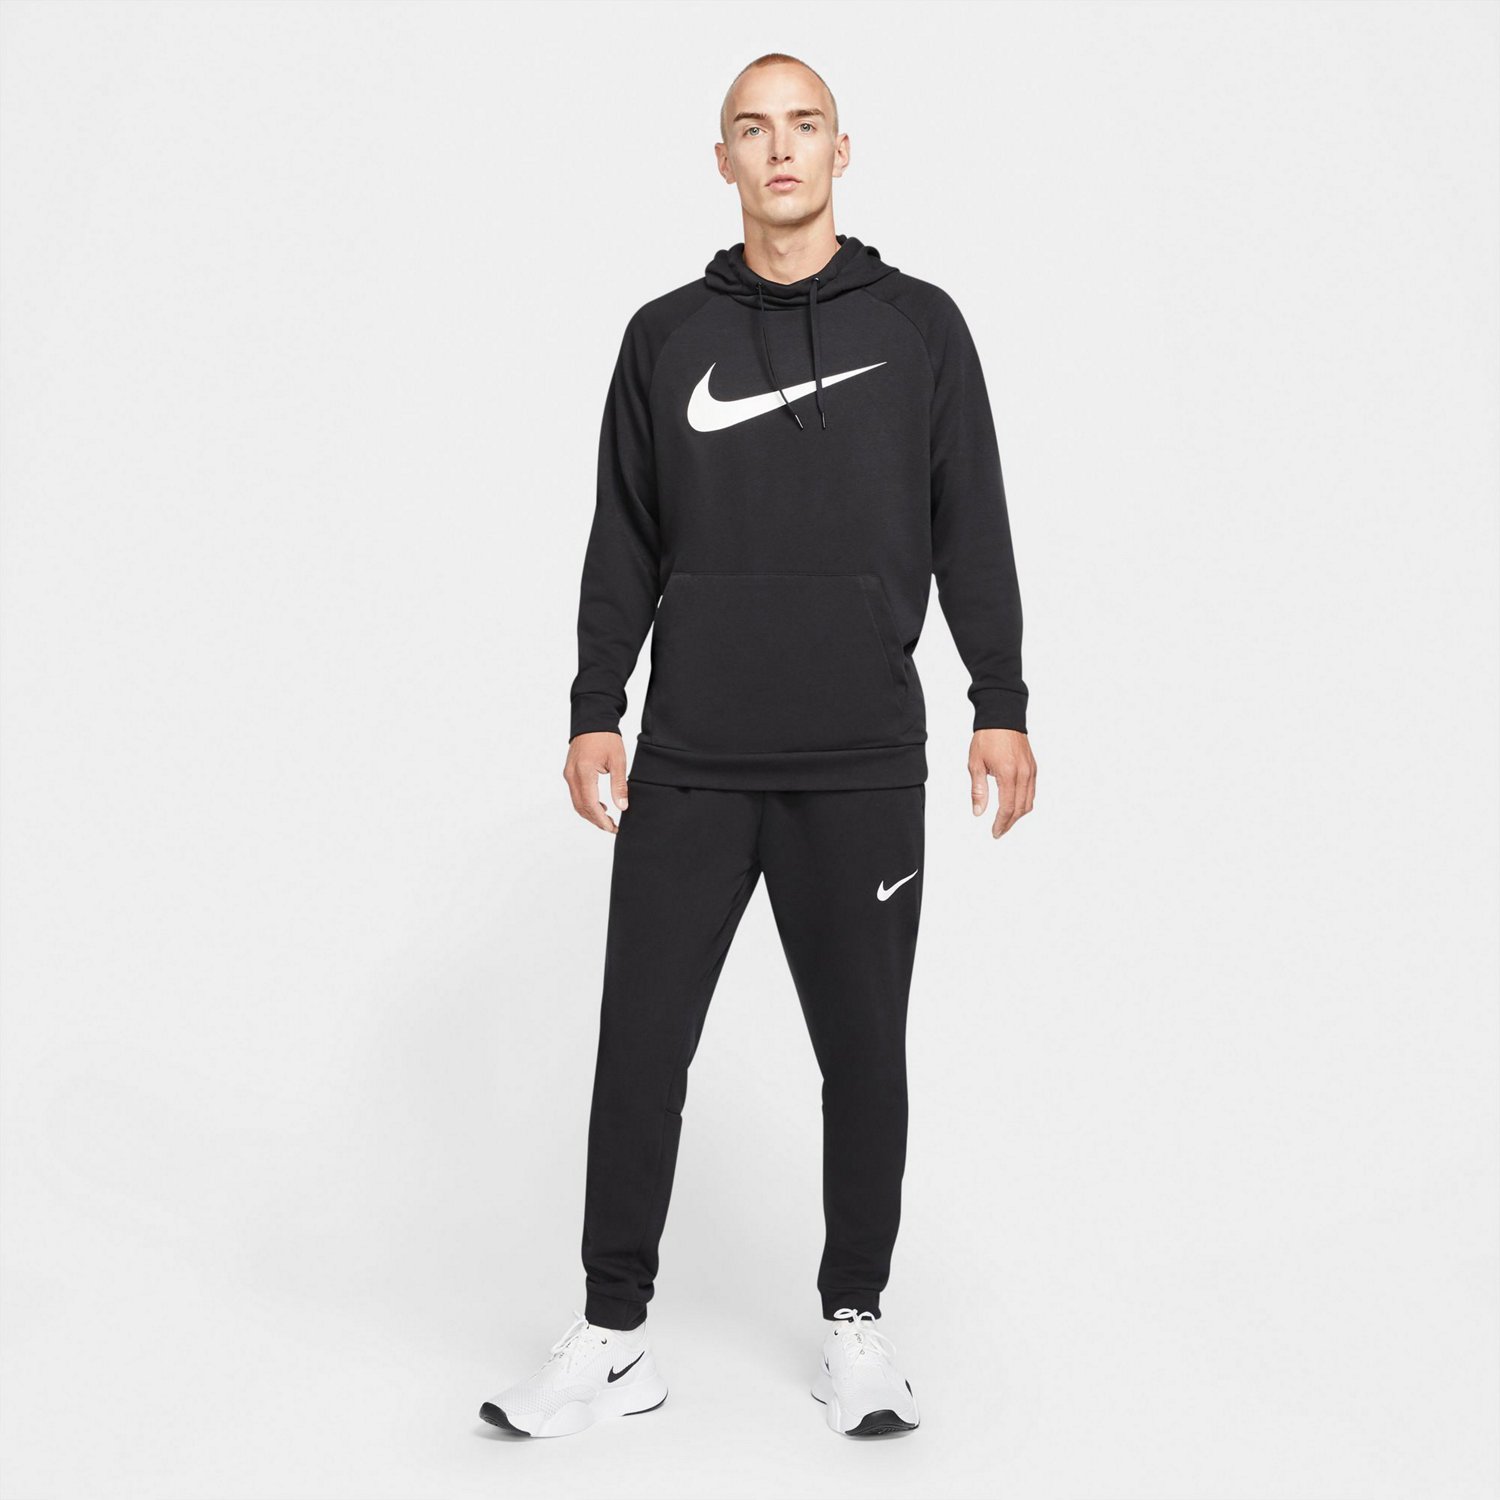 Nike Men's Dri-FI Tapered Training Pants